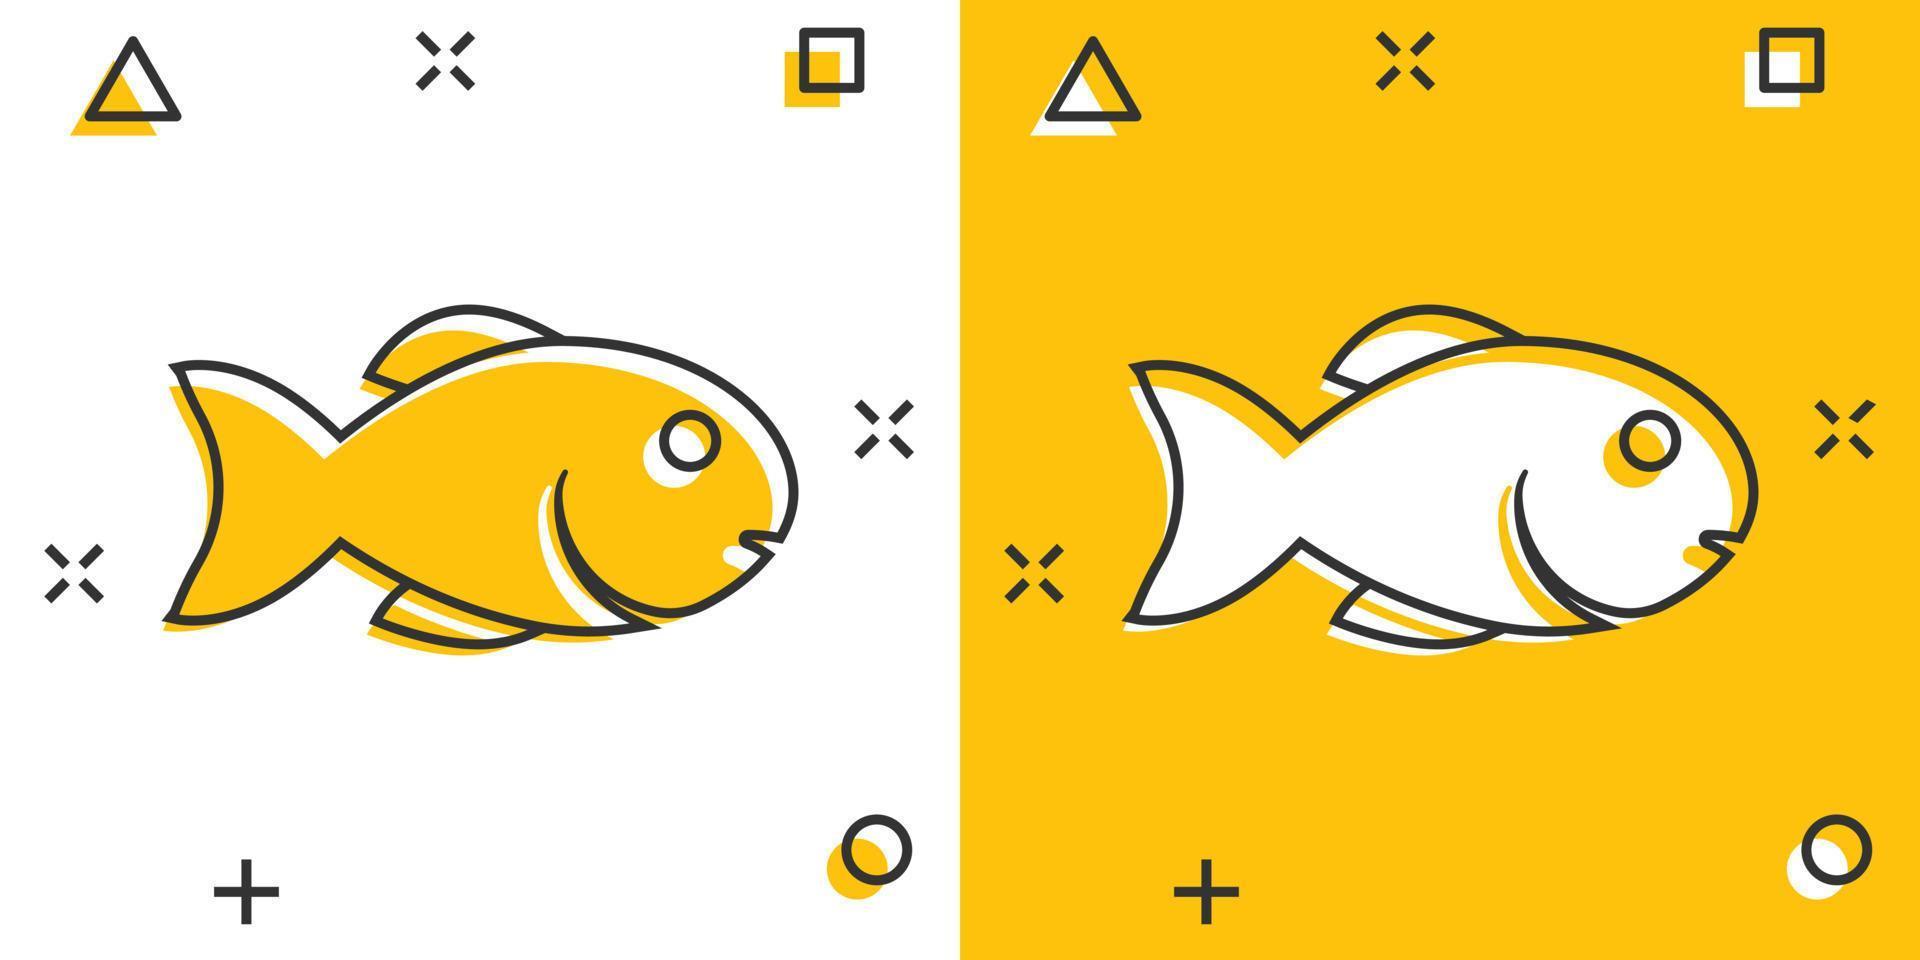 icono de pescado en estilo cómico. ilustración vectorial de dibujos animados de mariscos sobre fondo blanco aislado. concepto de negocio de efecto de salpicadura de animales marinos. vector